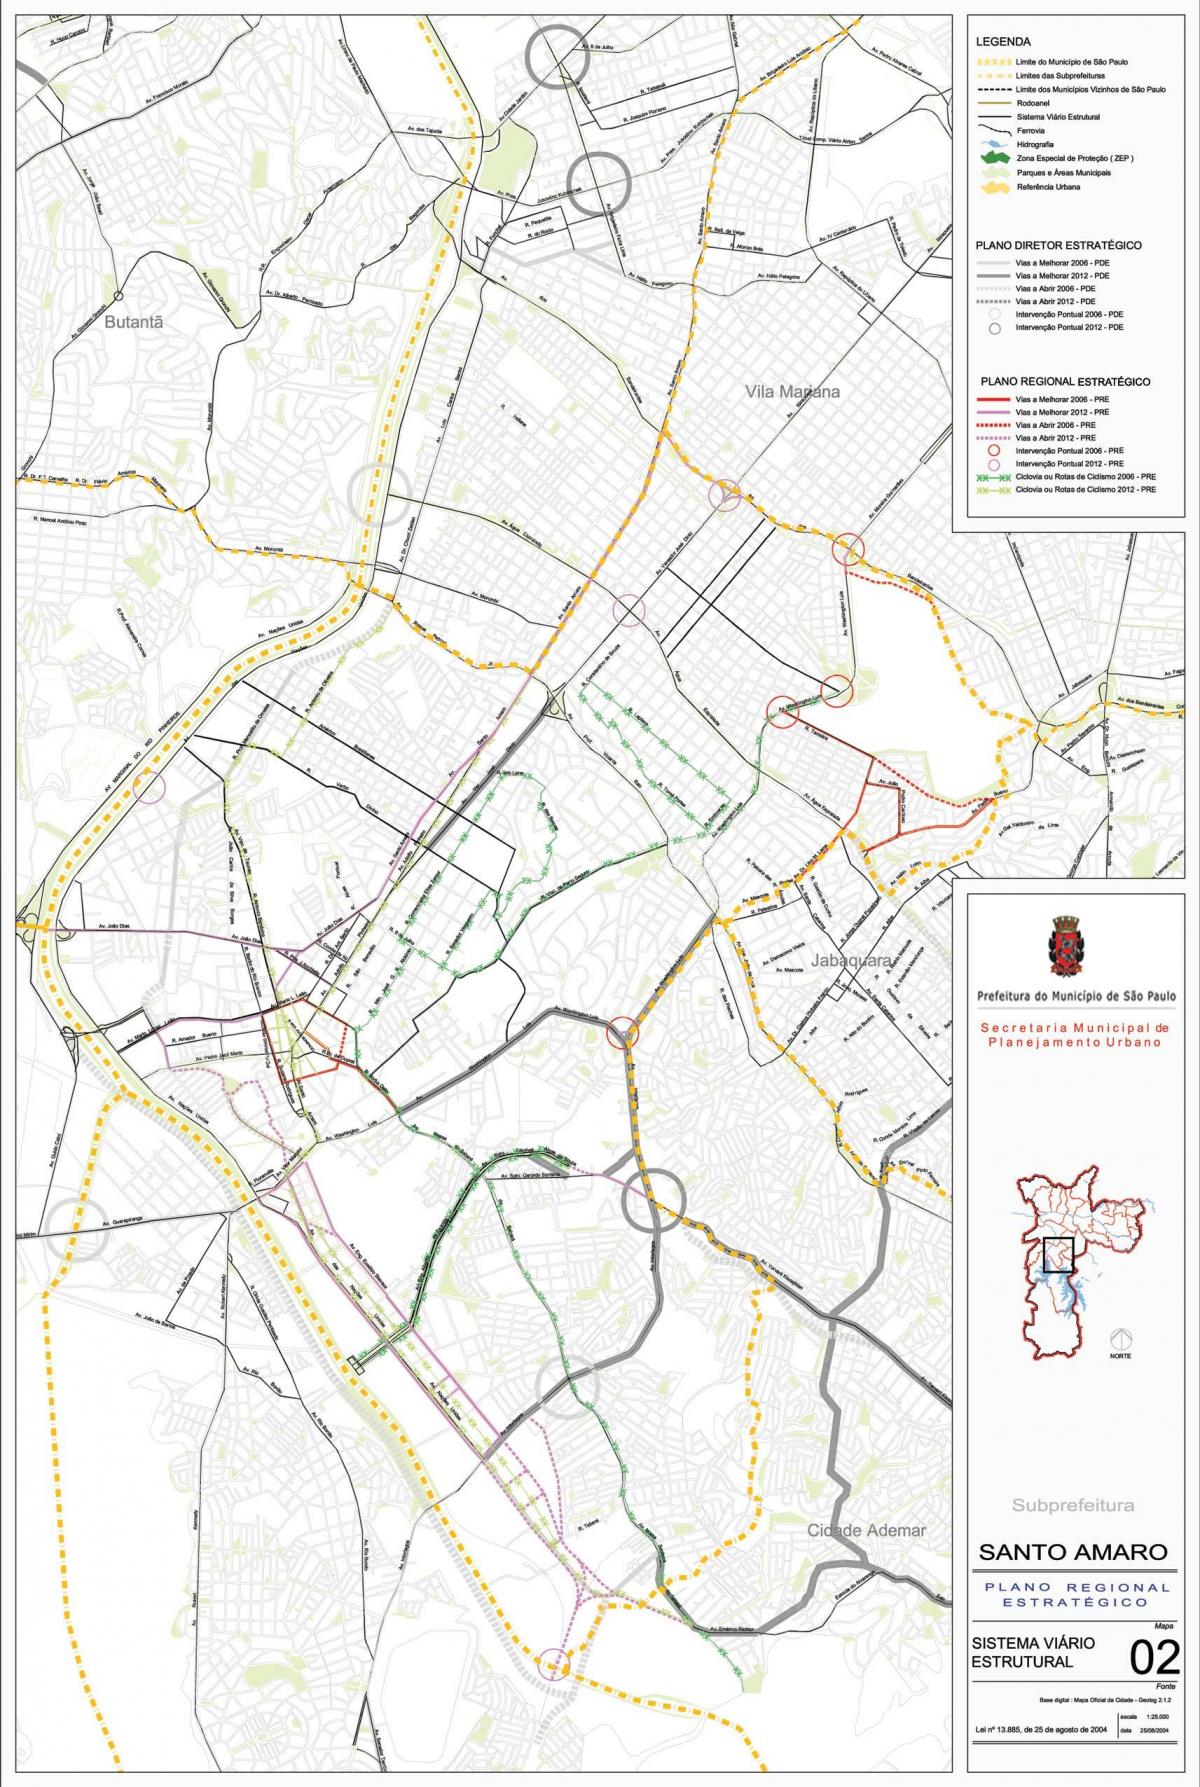 Kort af Sao Paulo Sao Paulo - Vegi